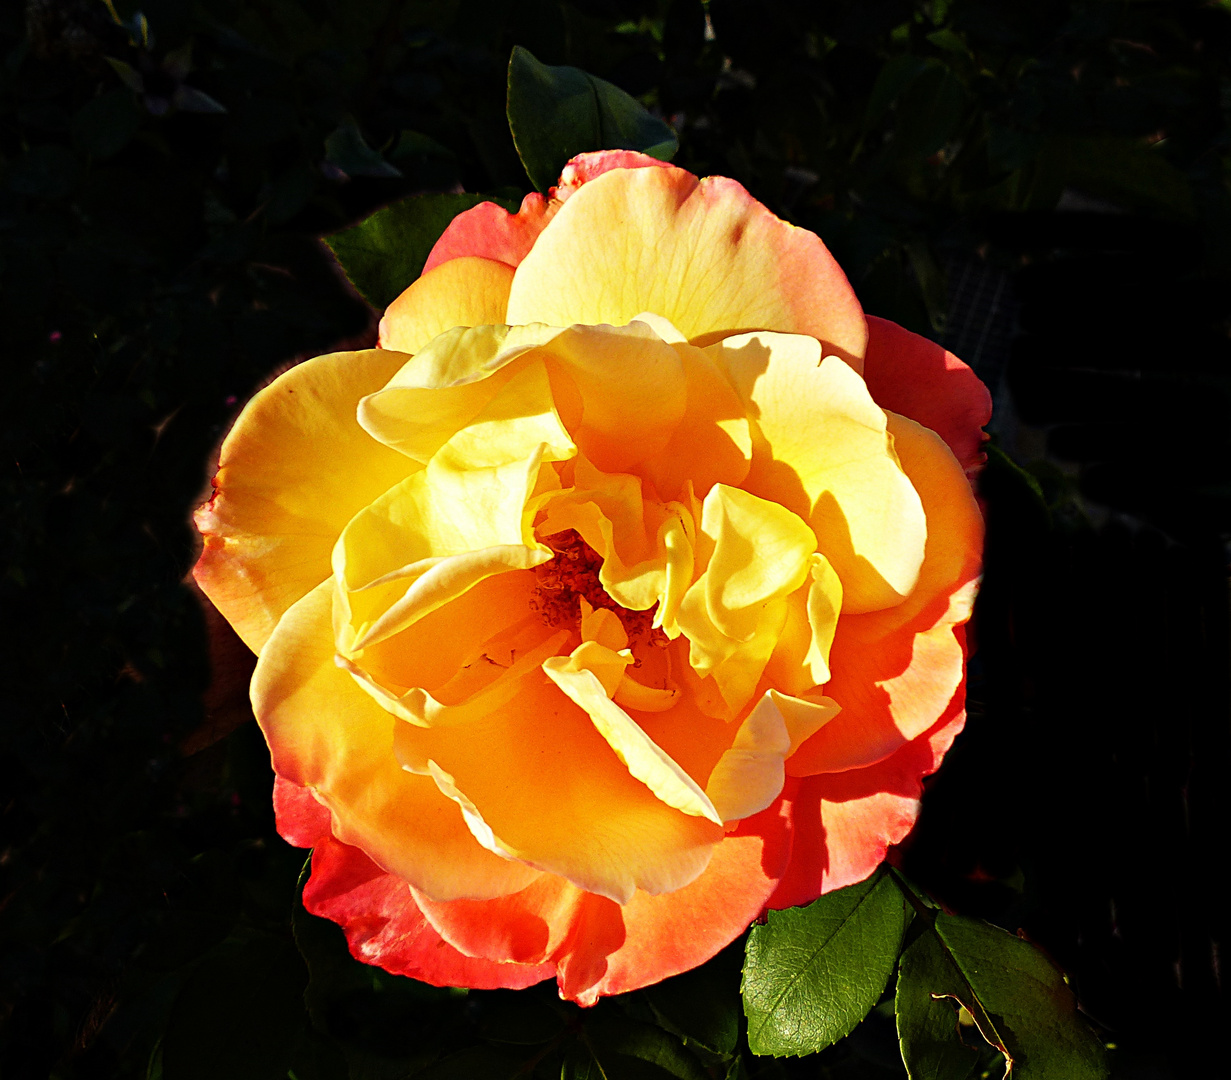 Die Rose symbolisiert die Liebe und die Romantik.